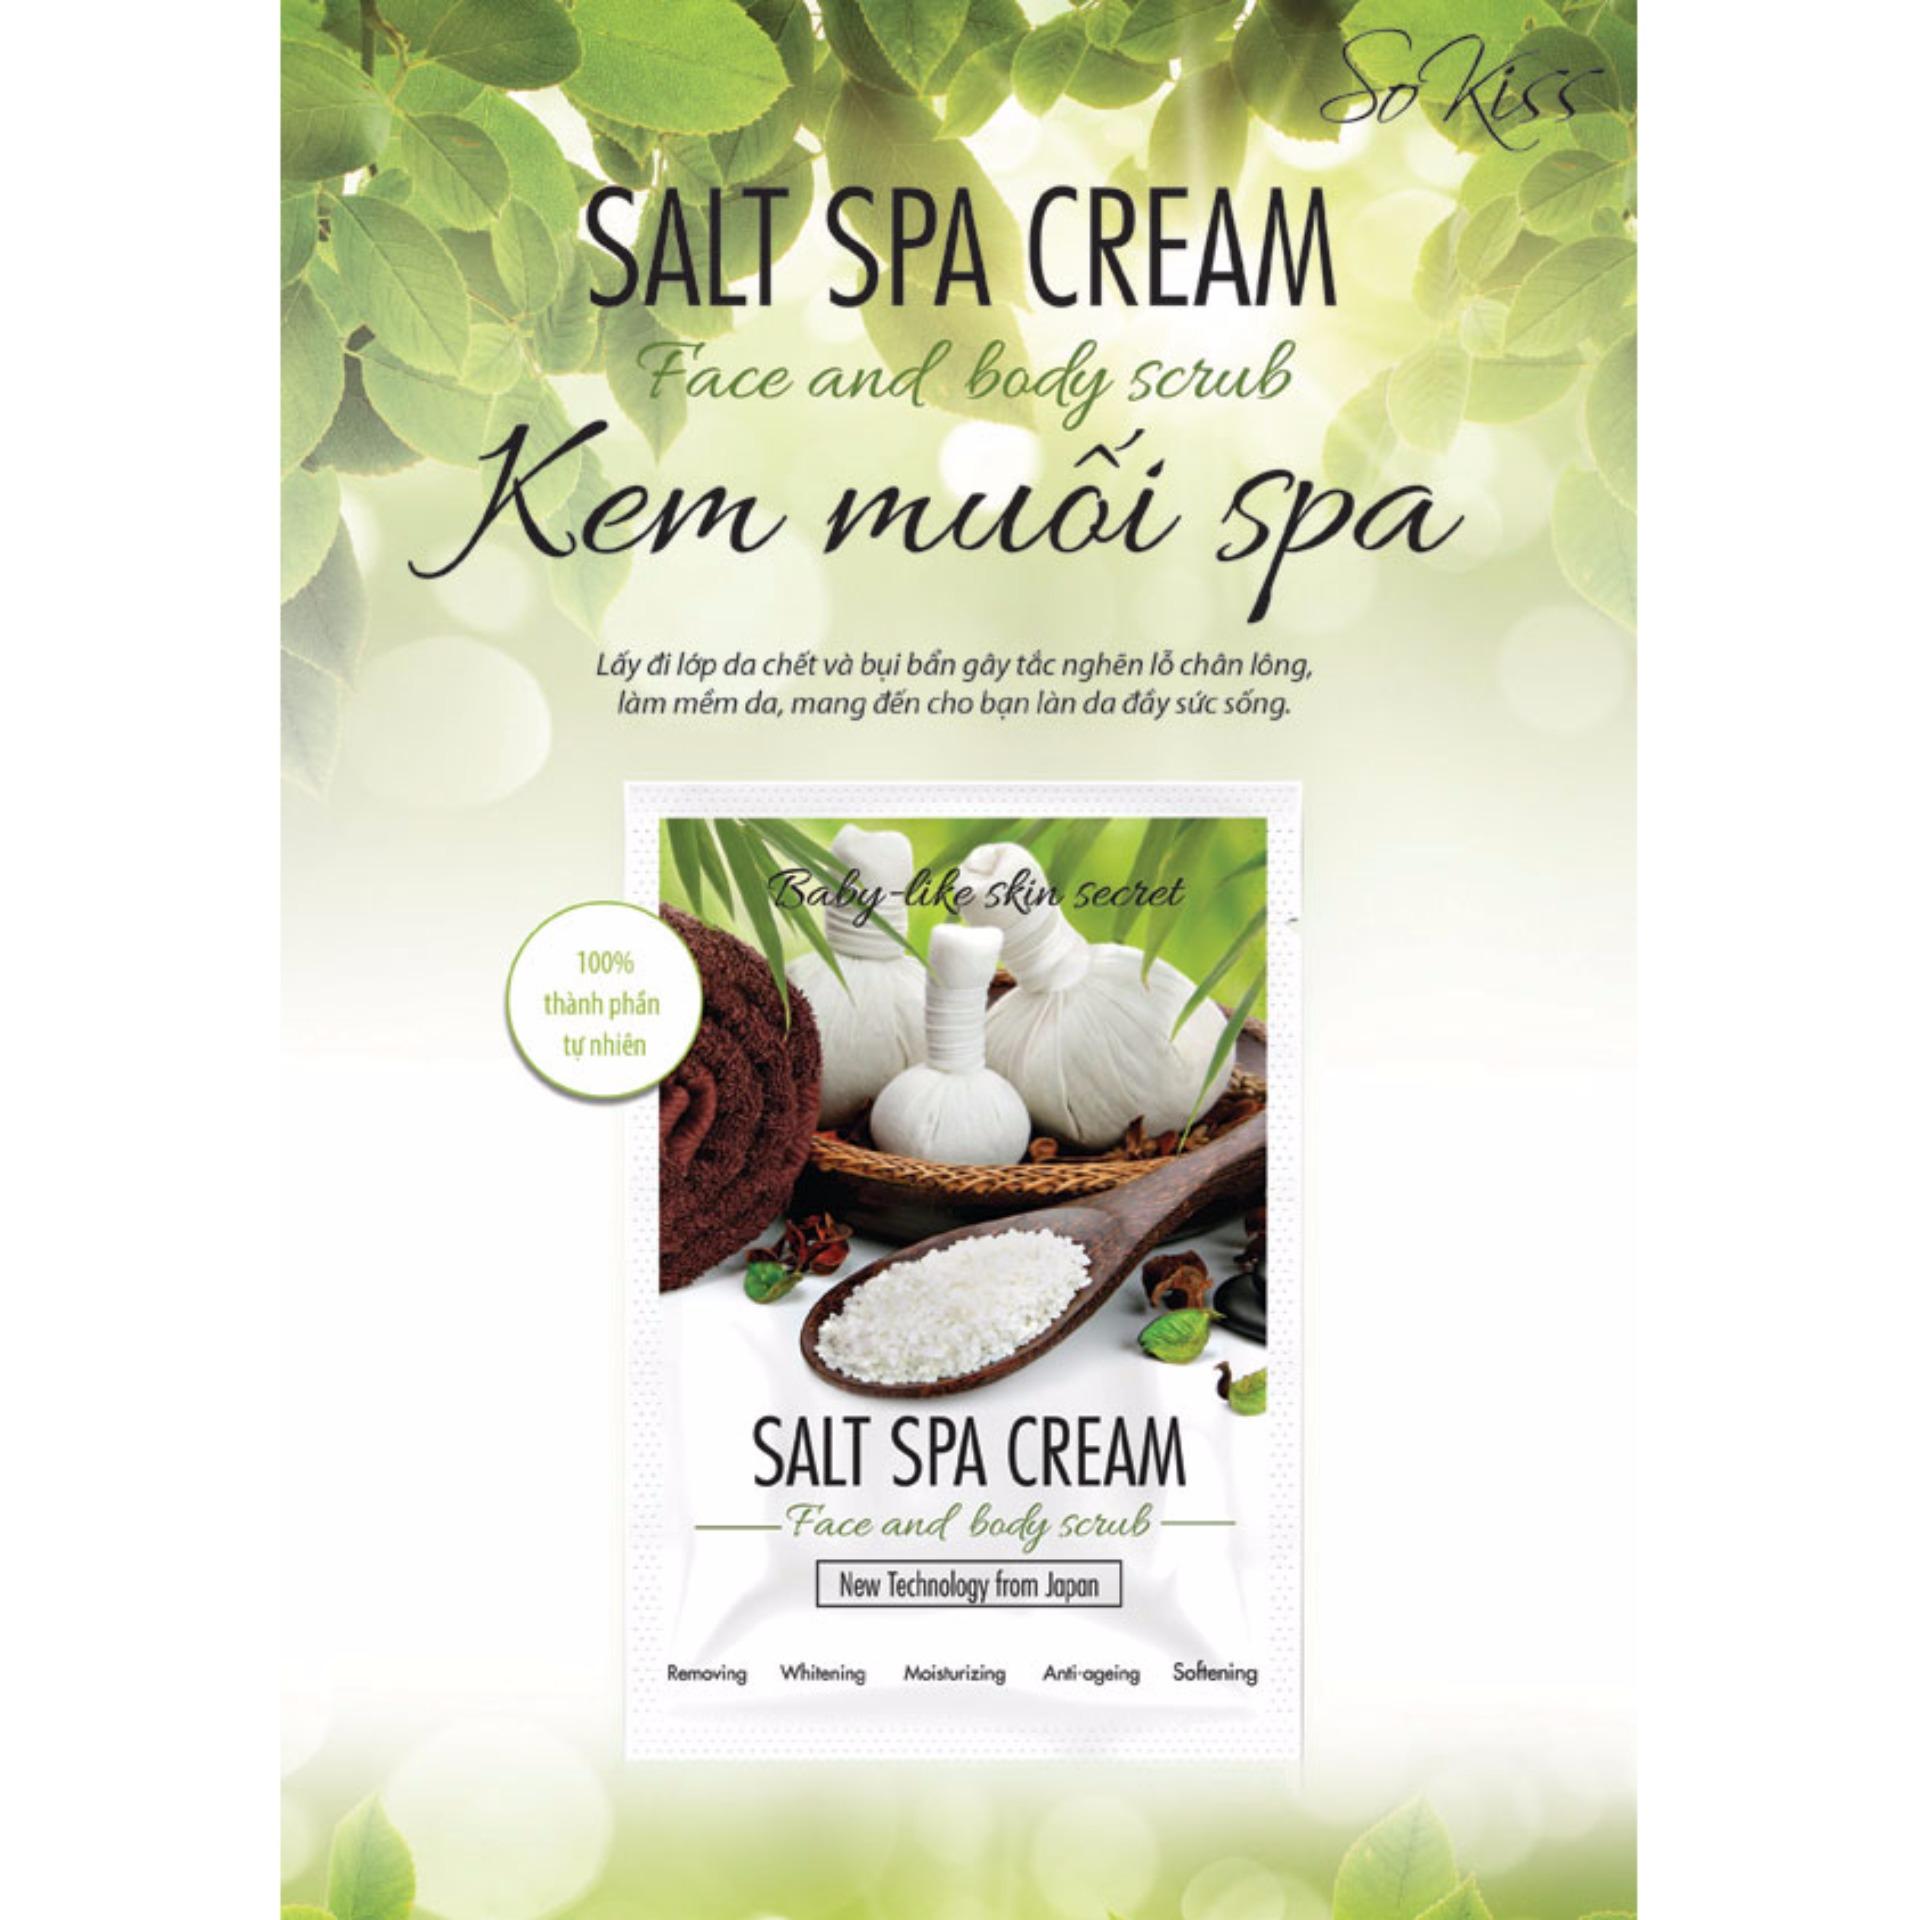 Kem muối tẩy tế bào chết làm trắng da mặt và toàn thân SoKiss Salt Spa Cream 100ml